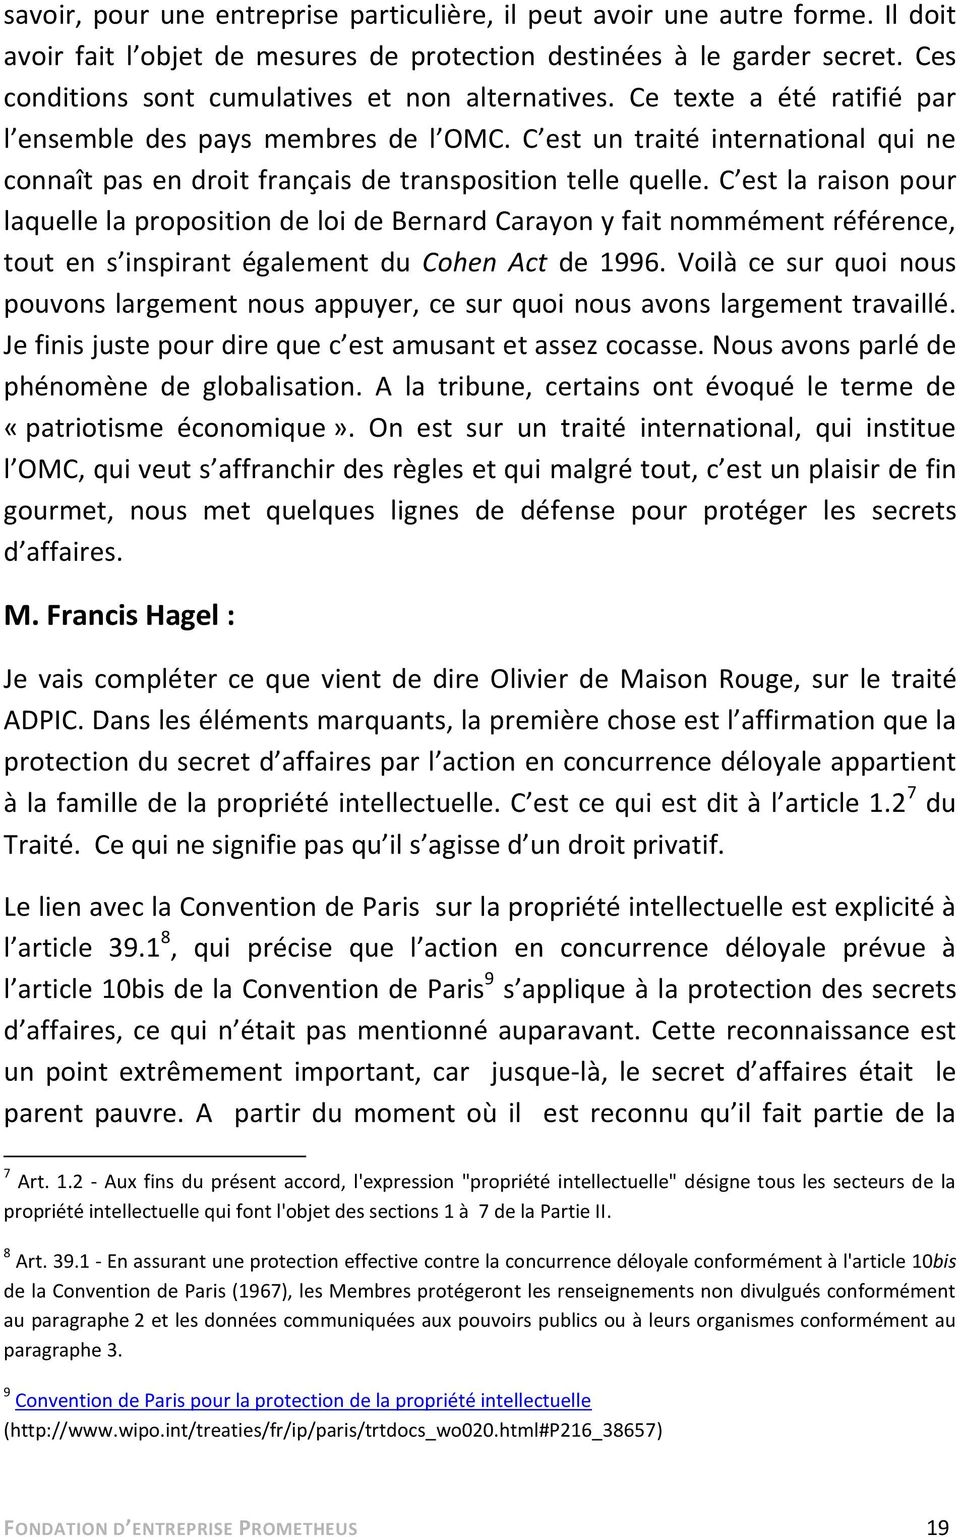 C est un traité international qui ne connaît pas en droit français de transposition telle quelle.